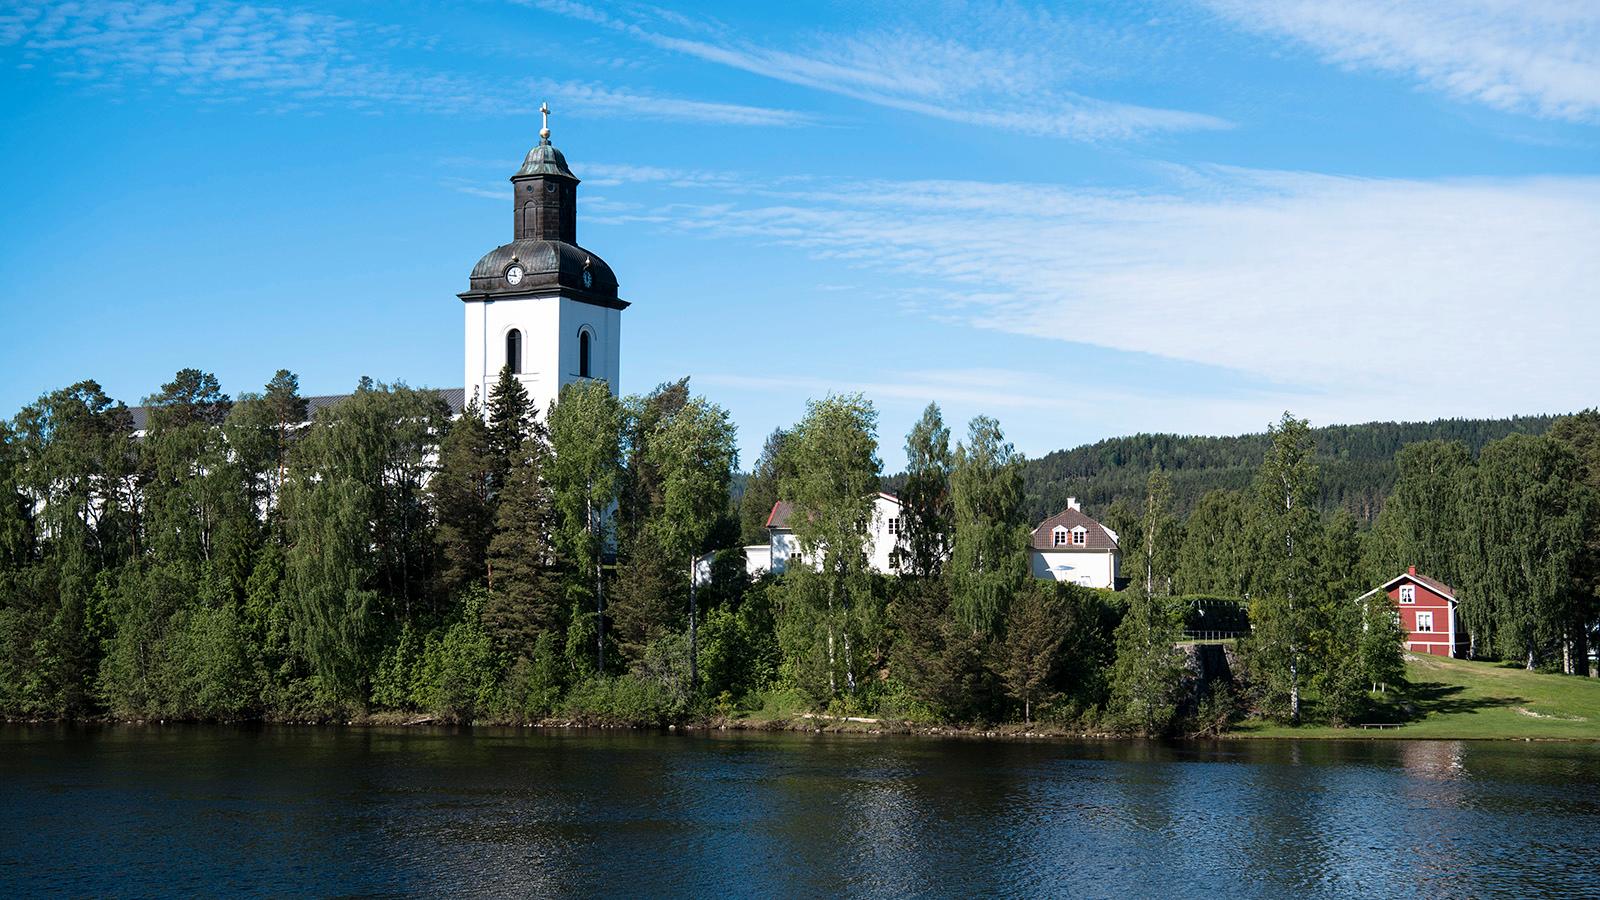 Järvsö kyrka, där Tommy Nilssons före detta svärmor Barbro ”Lill-Babs” Svensson begravdes, är en av 17 kyrkor som ingår i turnén.